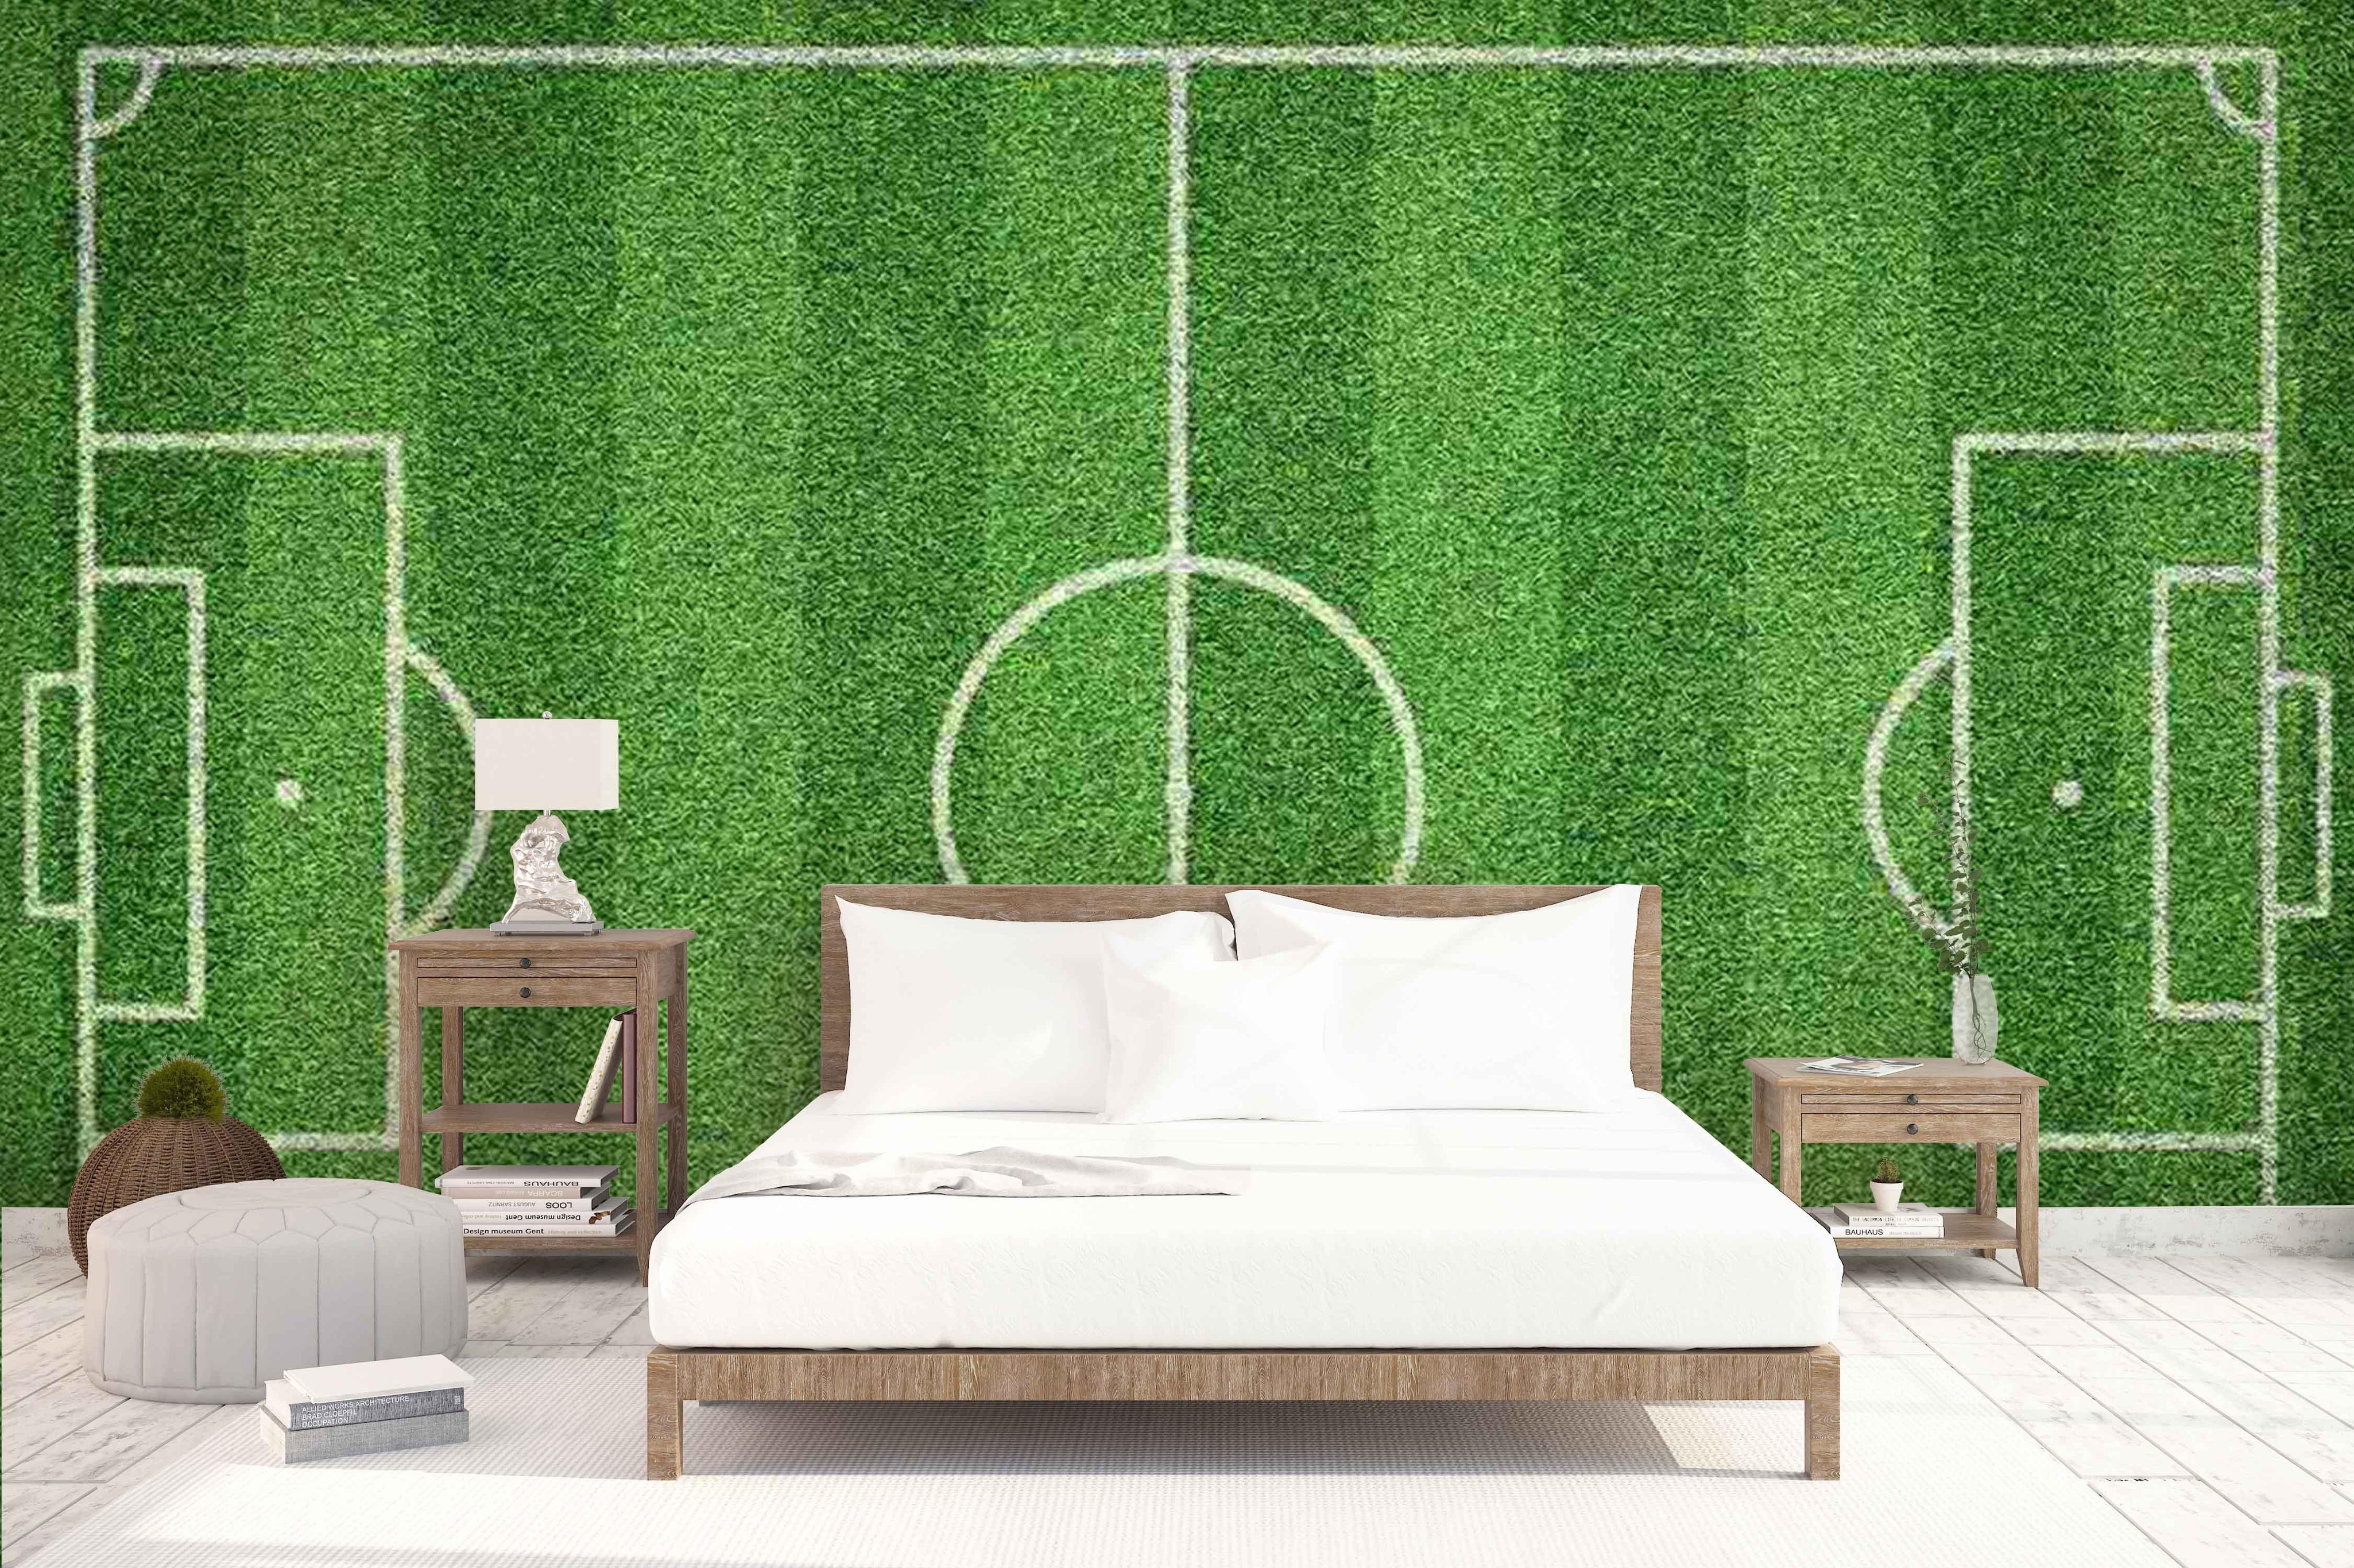 3D green football field wall mural wallpaper 31- Jess Art Decoration